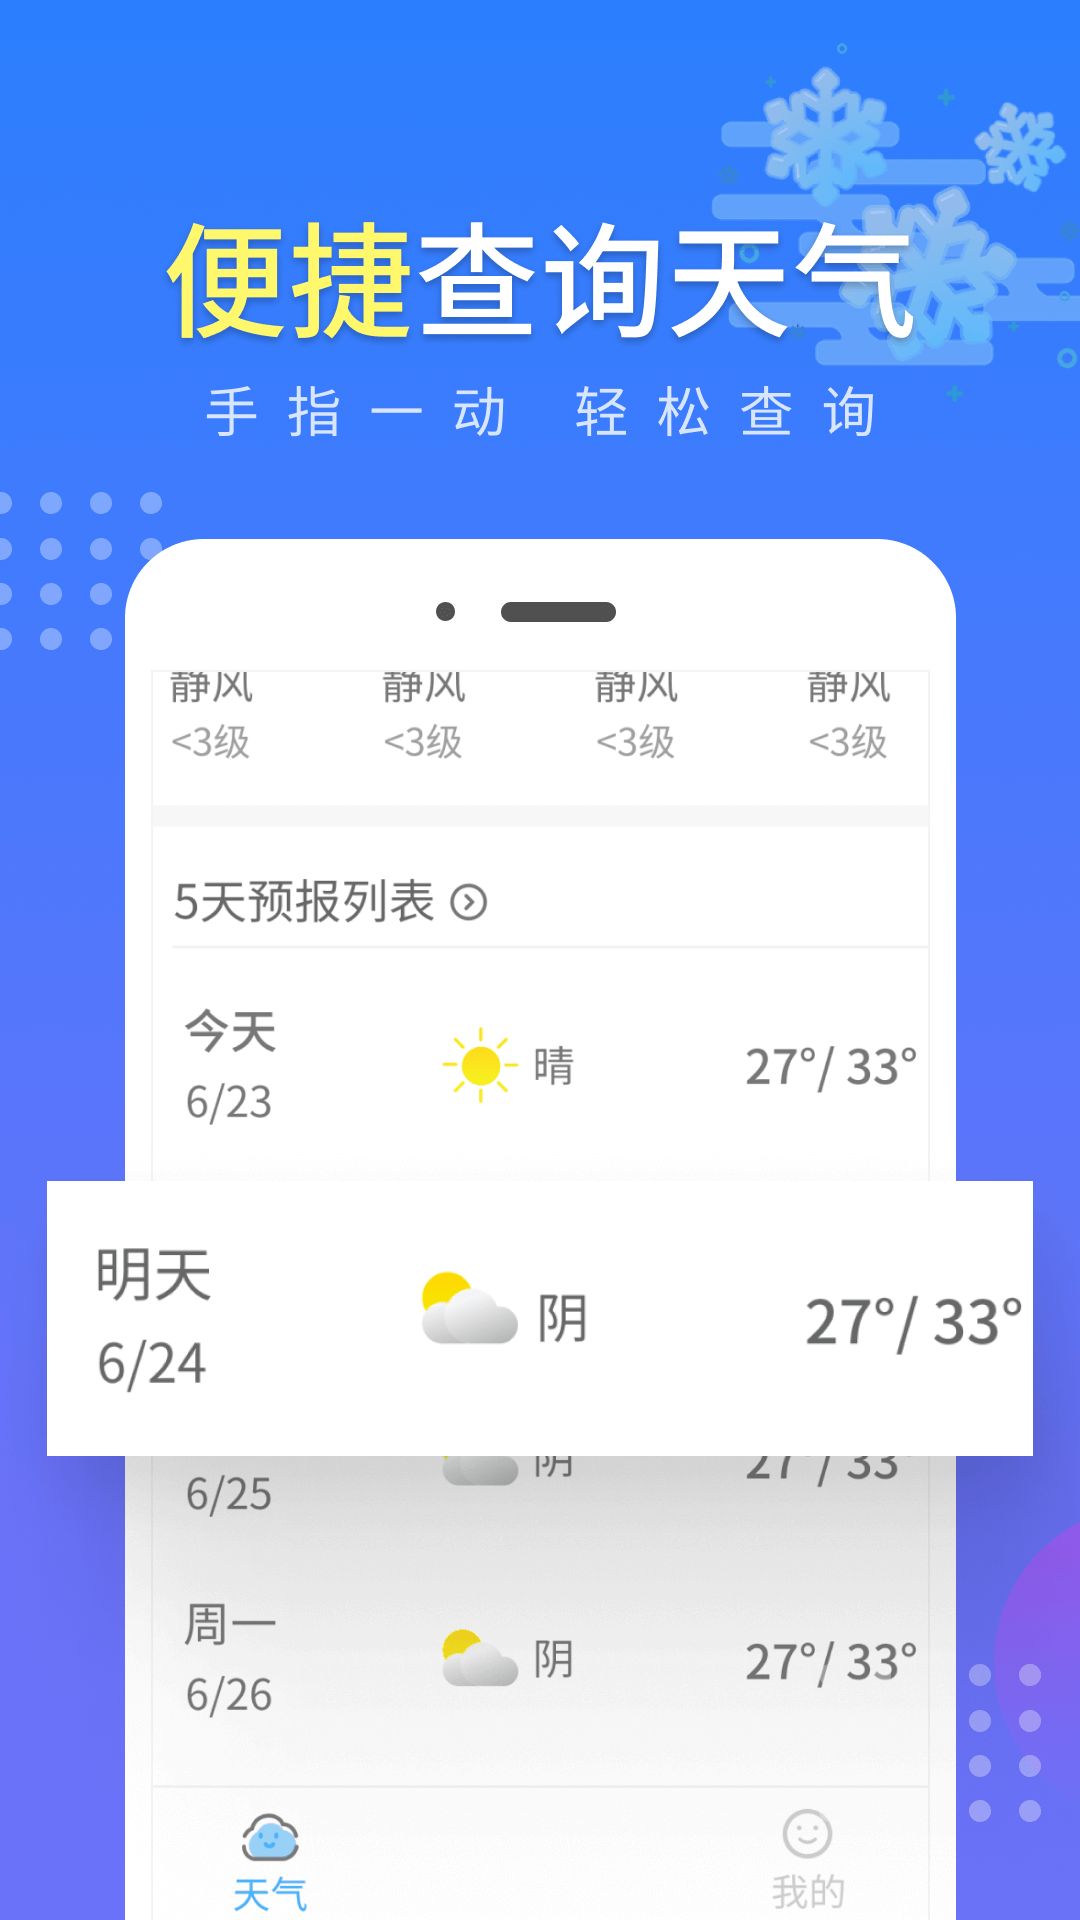 晴朗气象通app官方版图片1